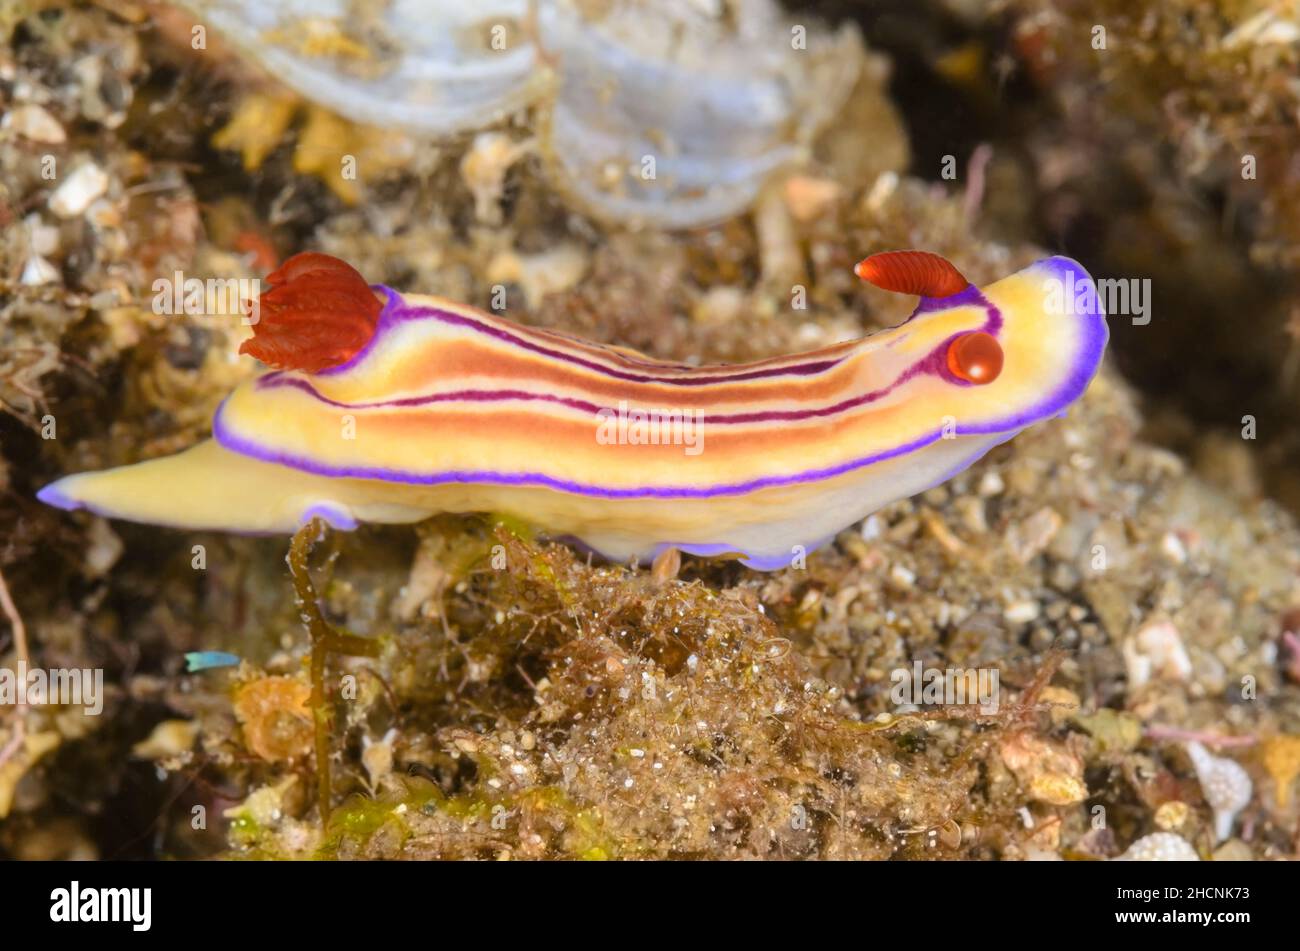 Sea slug or Nudibranch, Hypselodoris emma, Alor, Nusa Tenggara, Indonesia, Pacific Stock Photo